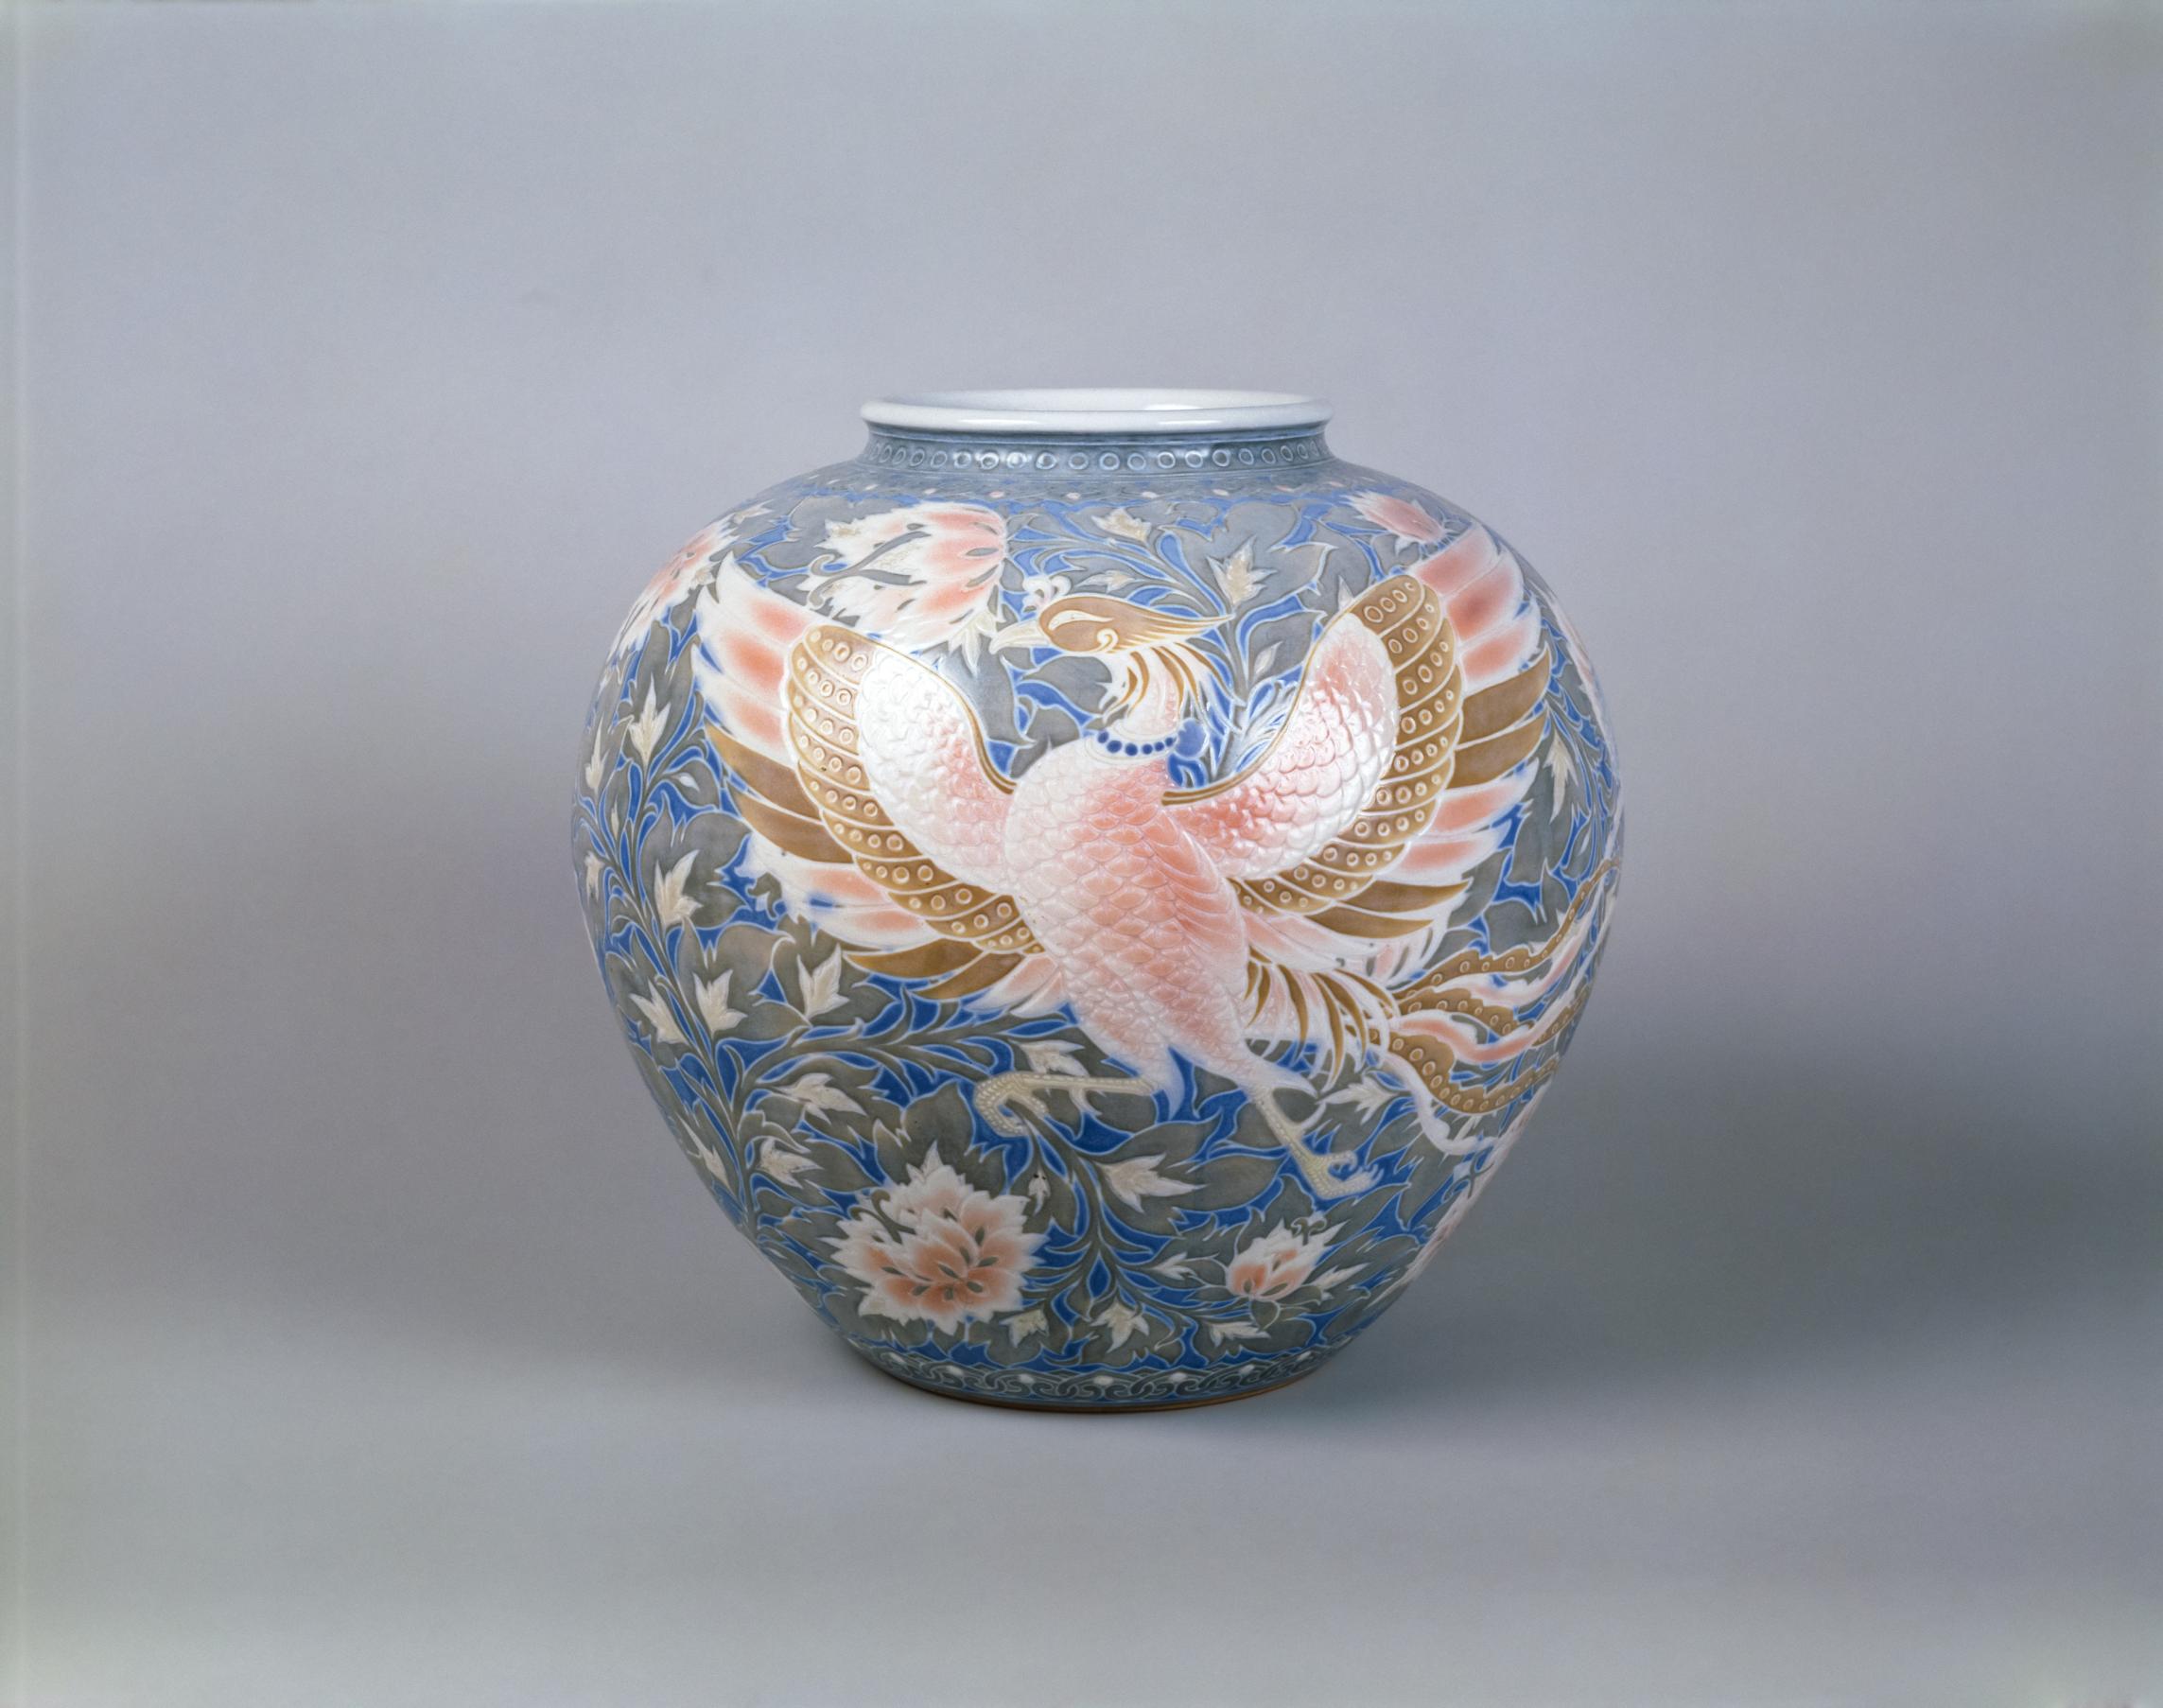 (3)板谷波山「彩磁瑞花祥鳳文花瓶」1916年MOA美術館蔵